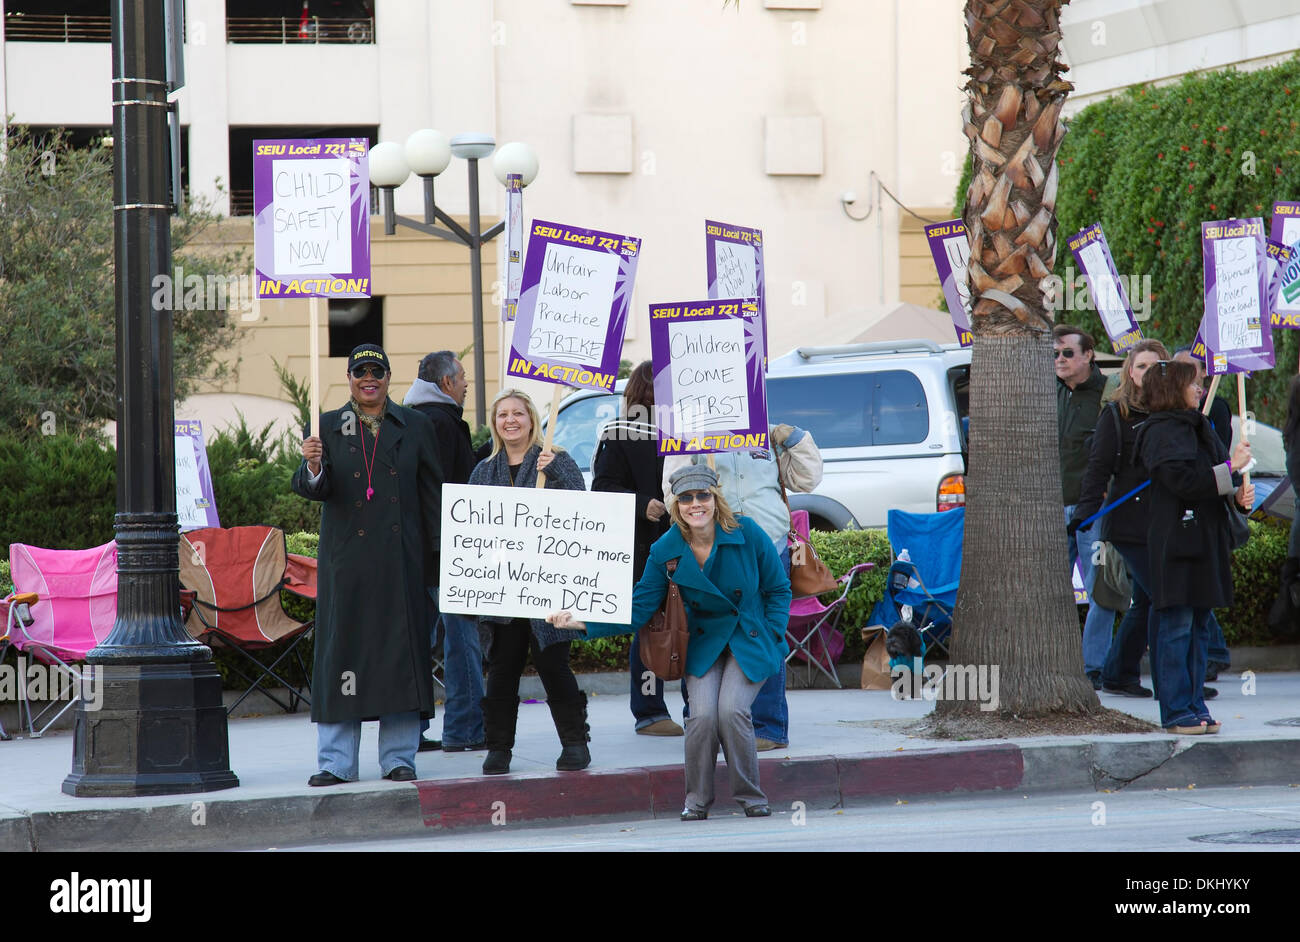 Kind schützende Dienstleistungen Sozialarbeiter, Mitglieder der lokalen 721 SEIU streiken in Pasadena, Kalifornien. Stockfoto